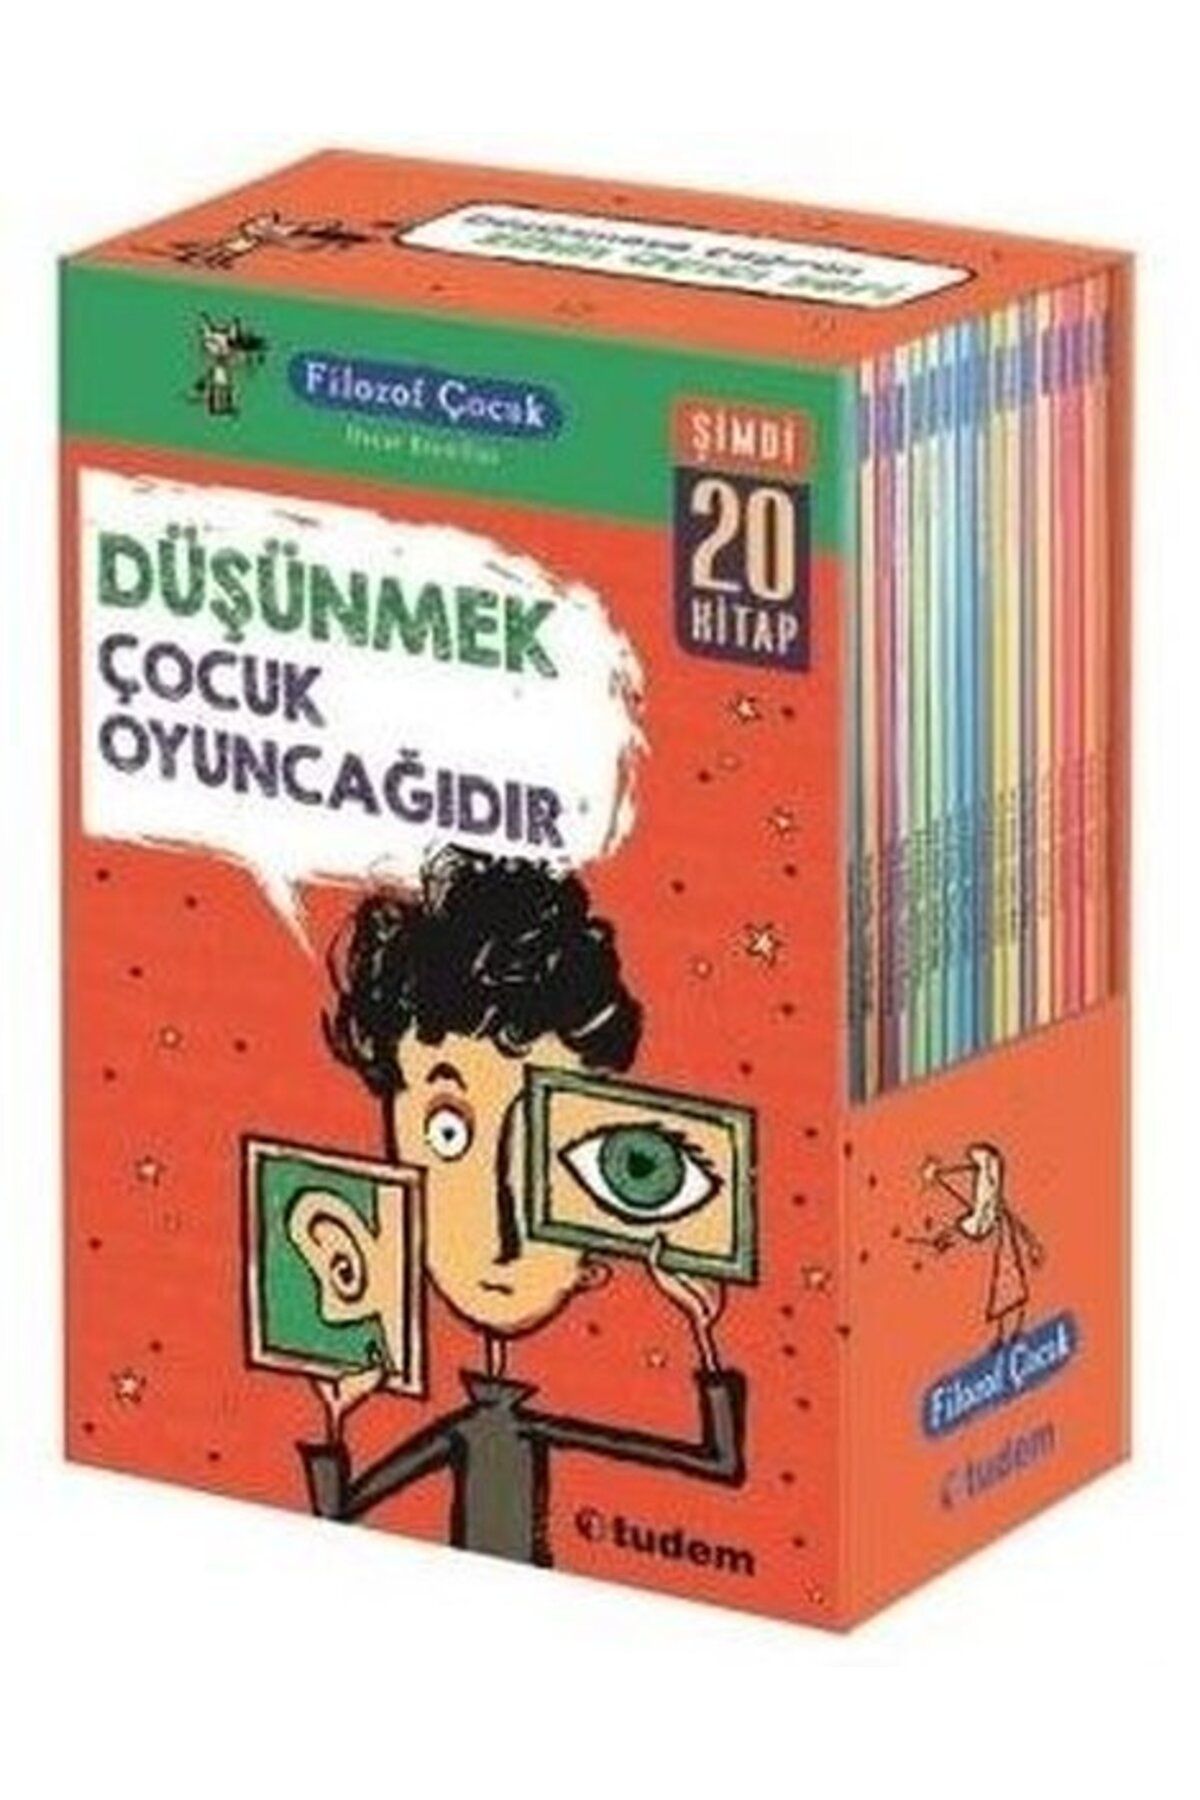 Tudem Yayınları Filozof Çocuk Serisi (20 KİTAP)